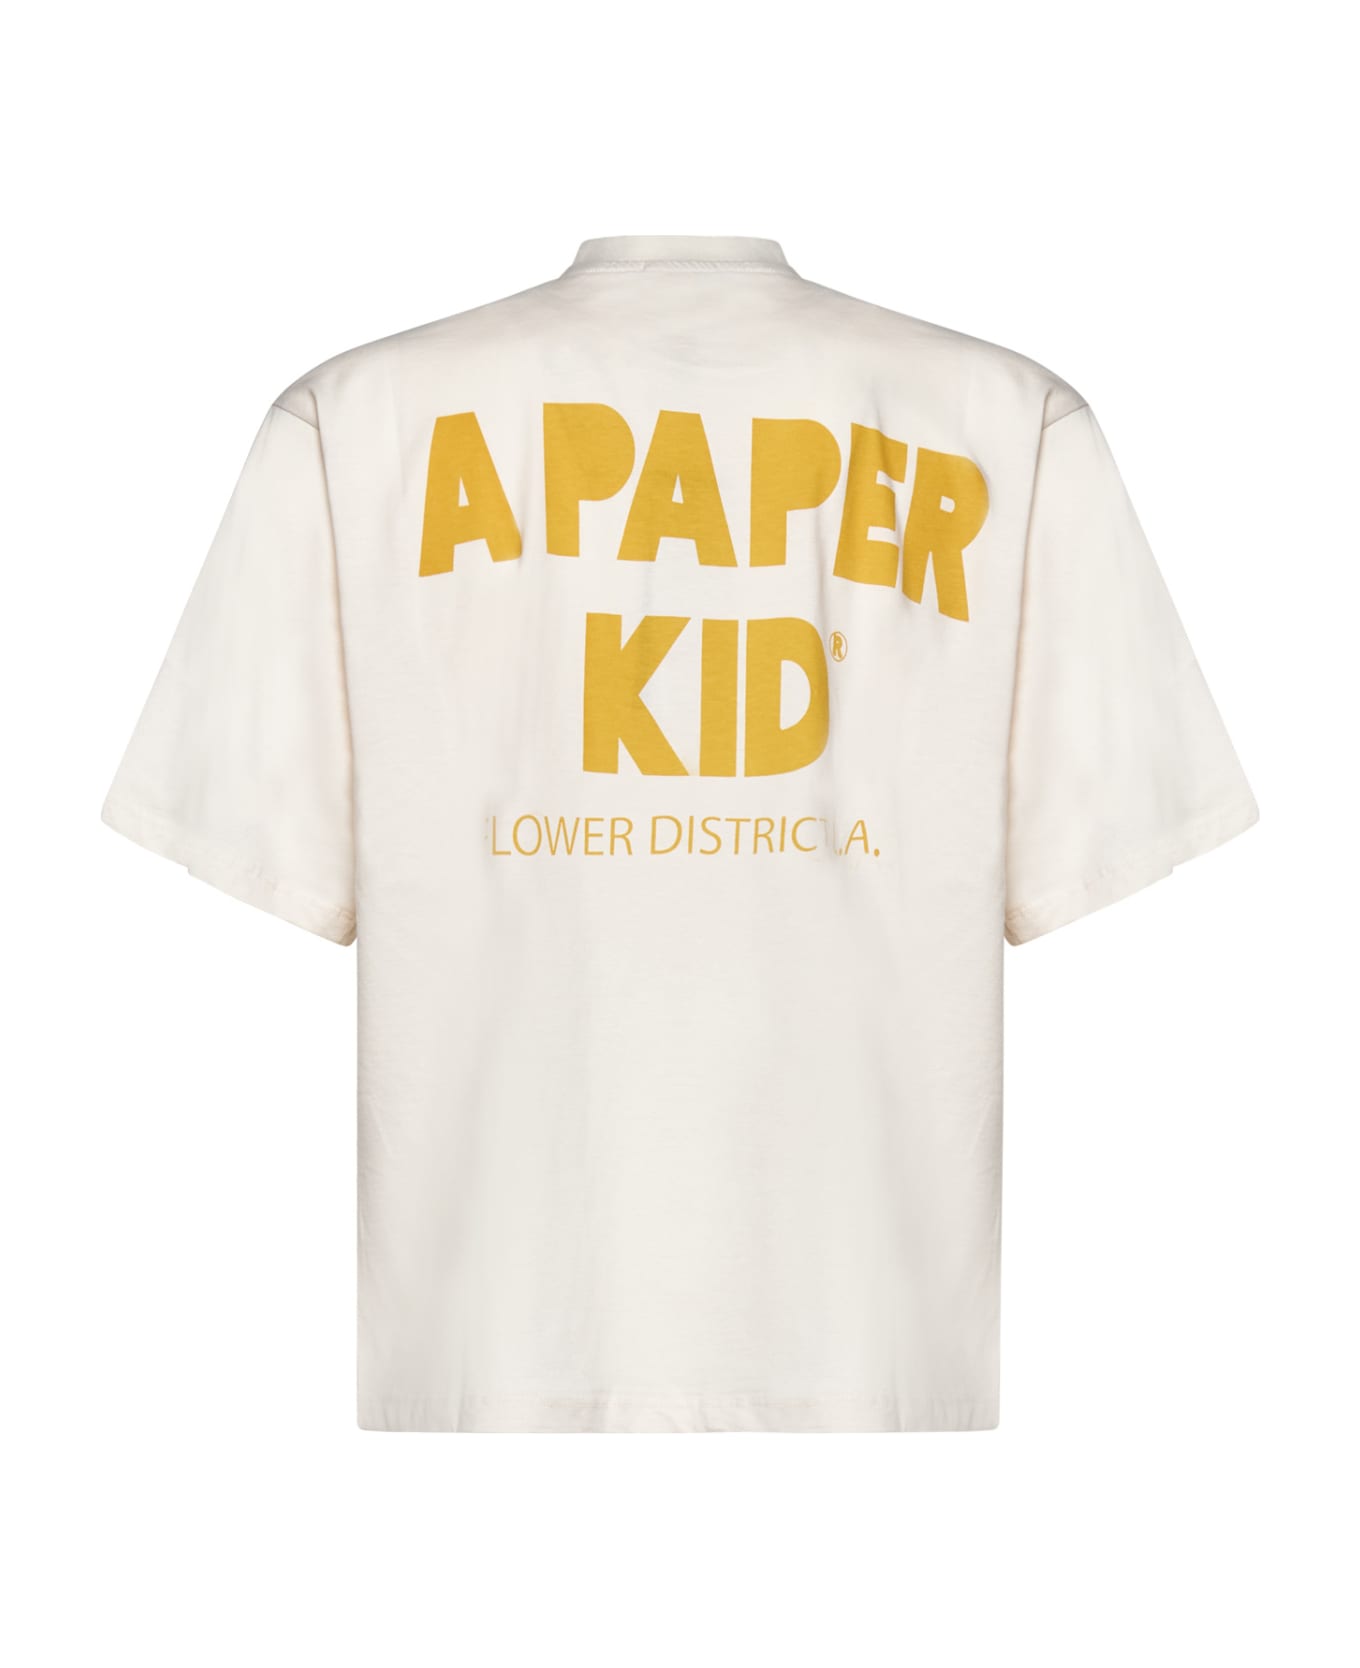 A Paper Kid T-Shirt - Cream